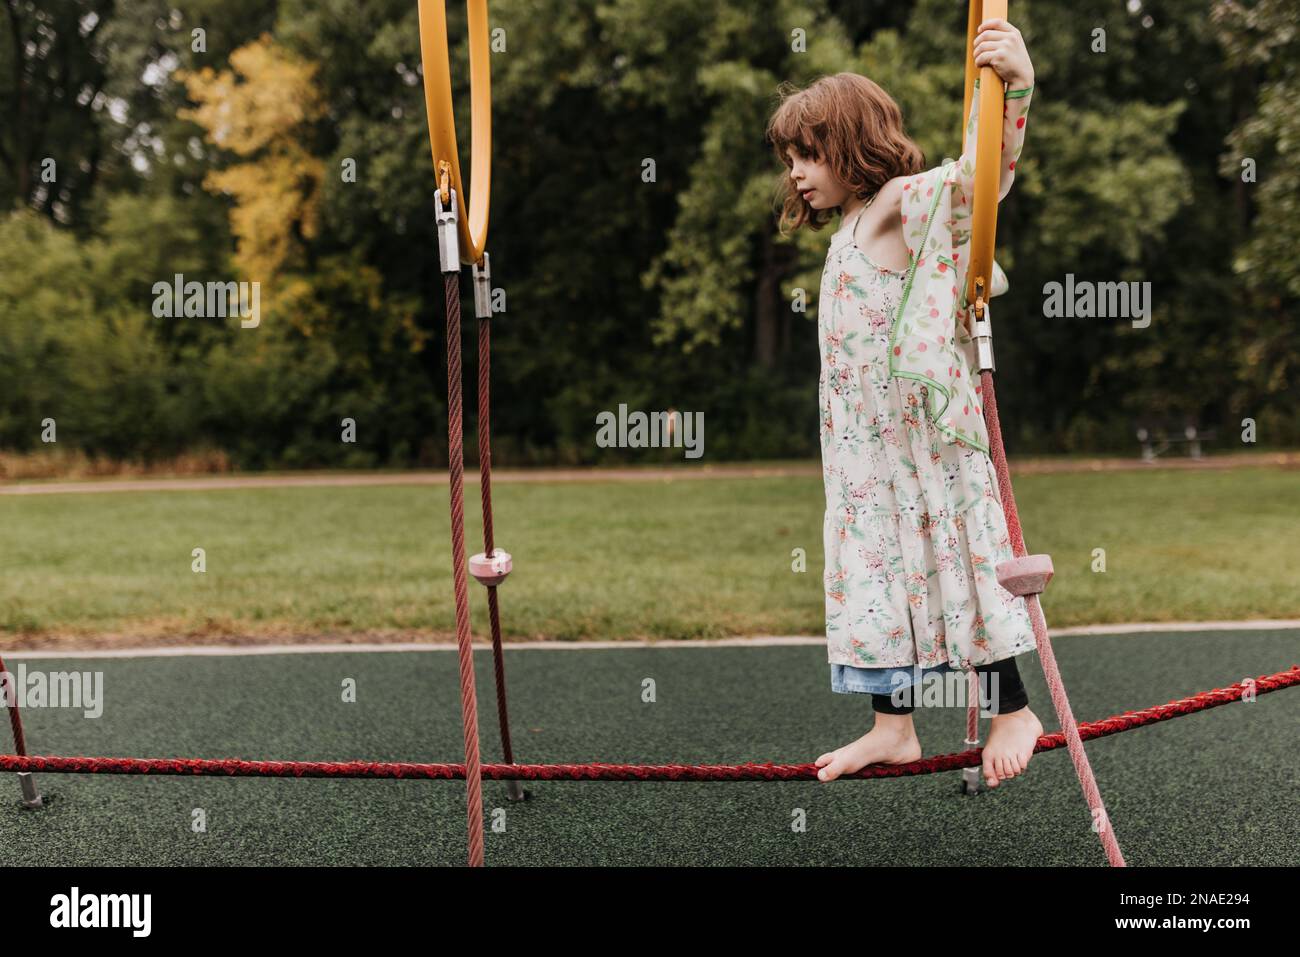 La giovane ragazza gioca sul parco giochi attrezzature nel giorno nuvoloso Foto Stock